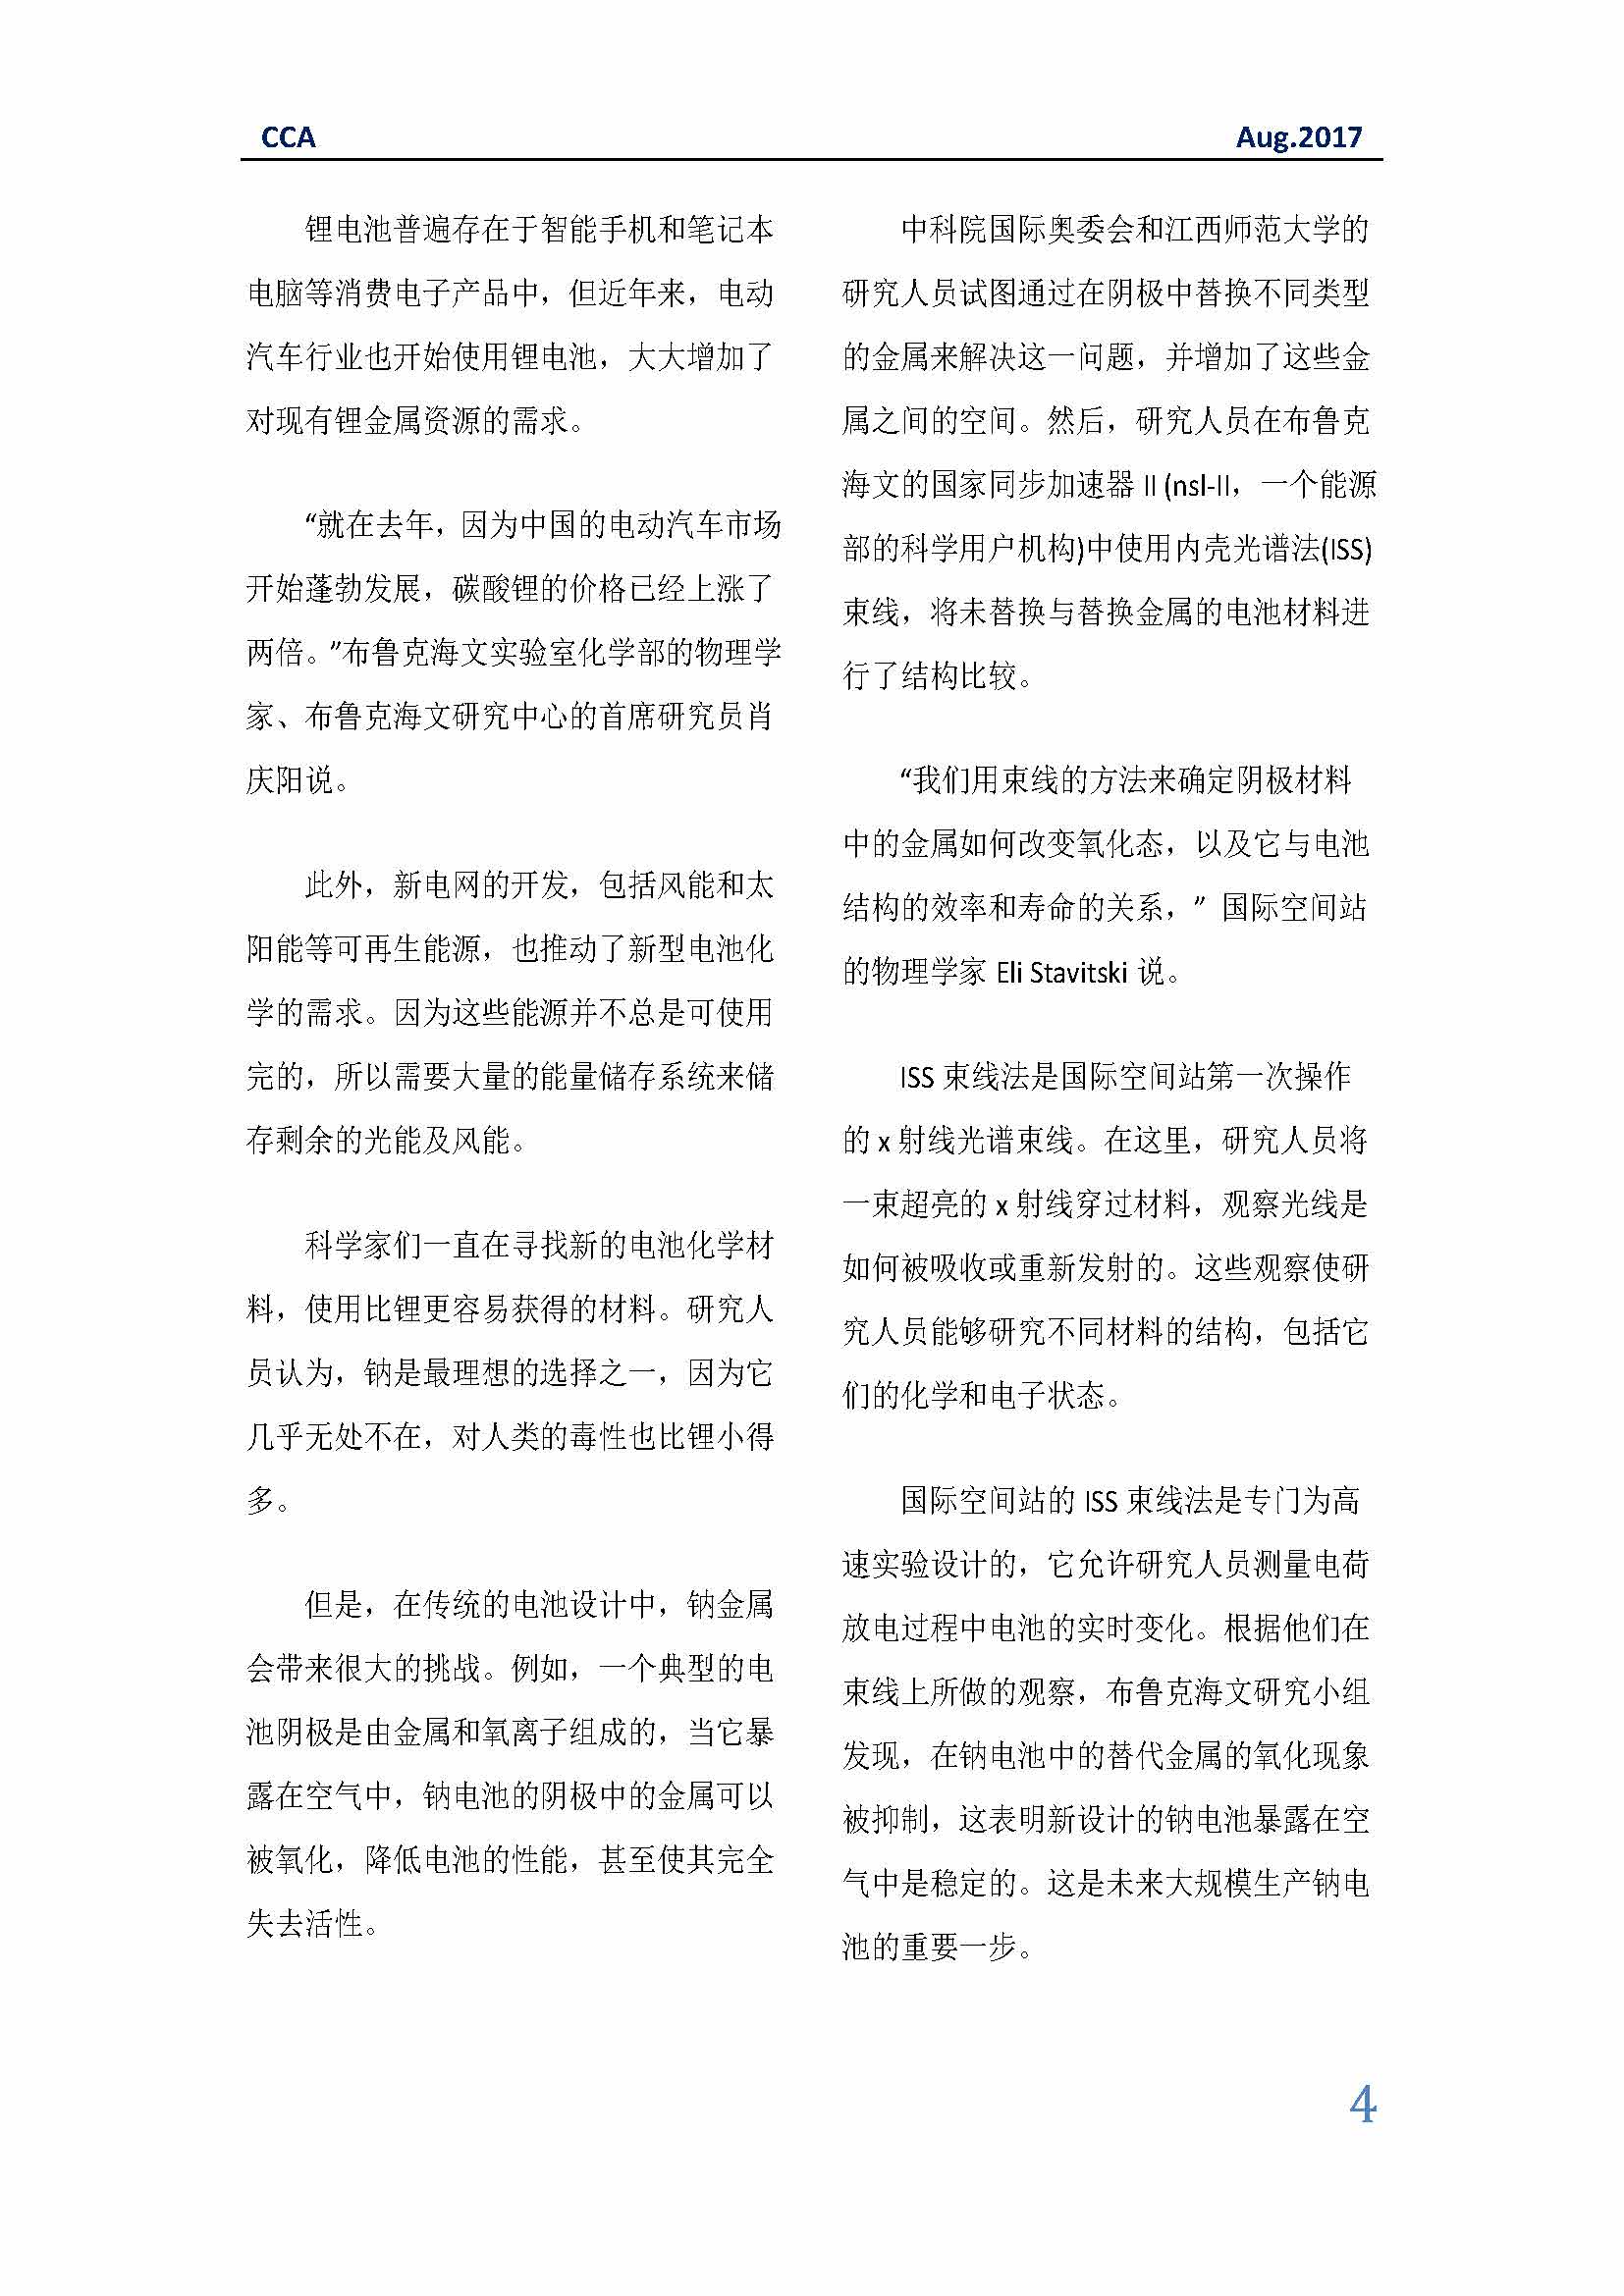 中国科技咨询协会国际快讯（第二十九期）_页面_04.jpg